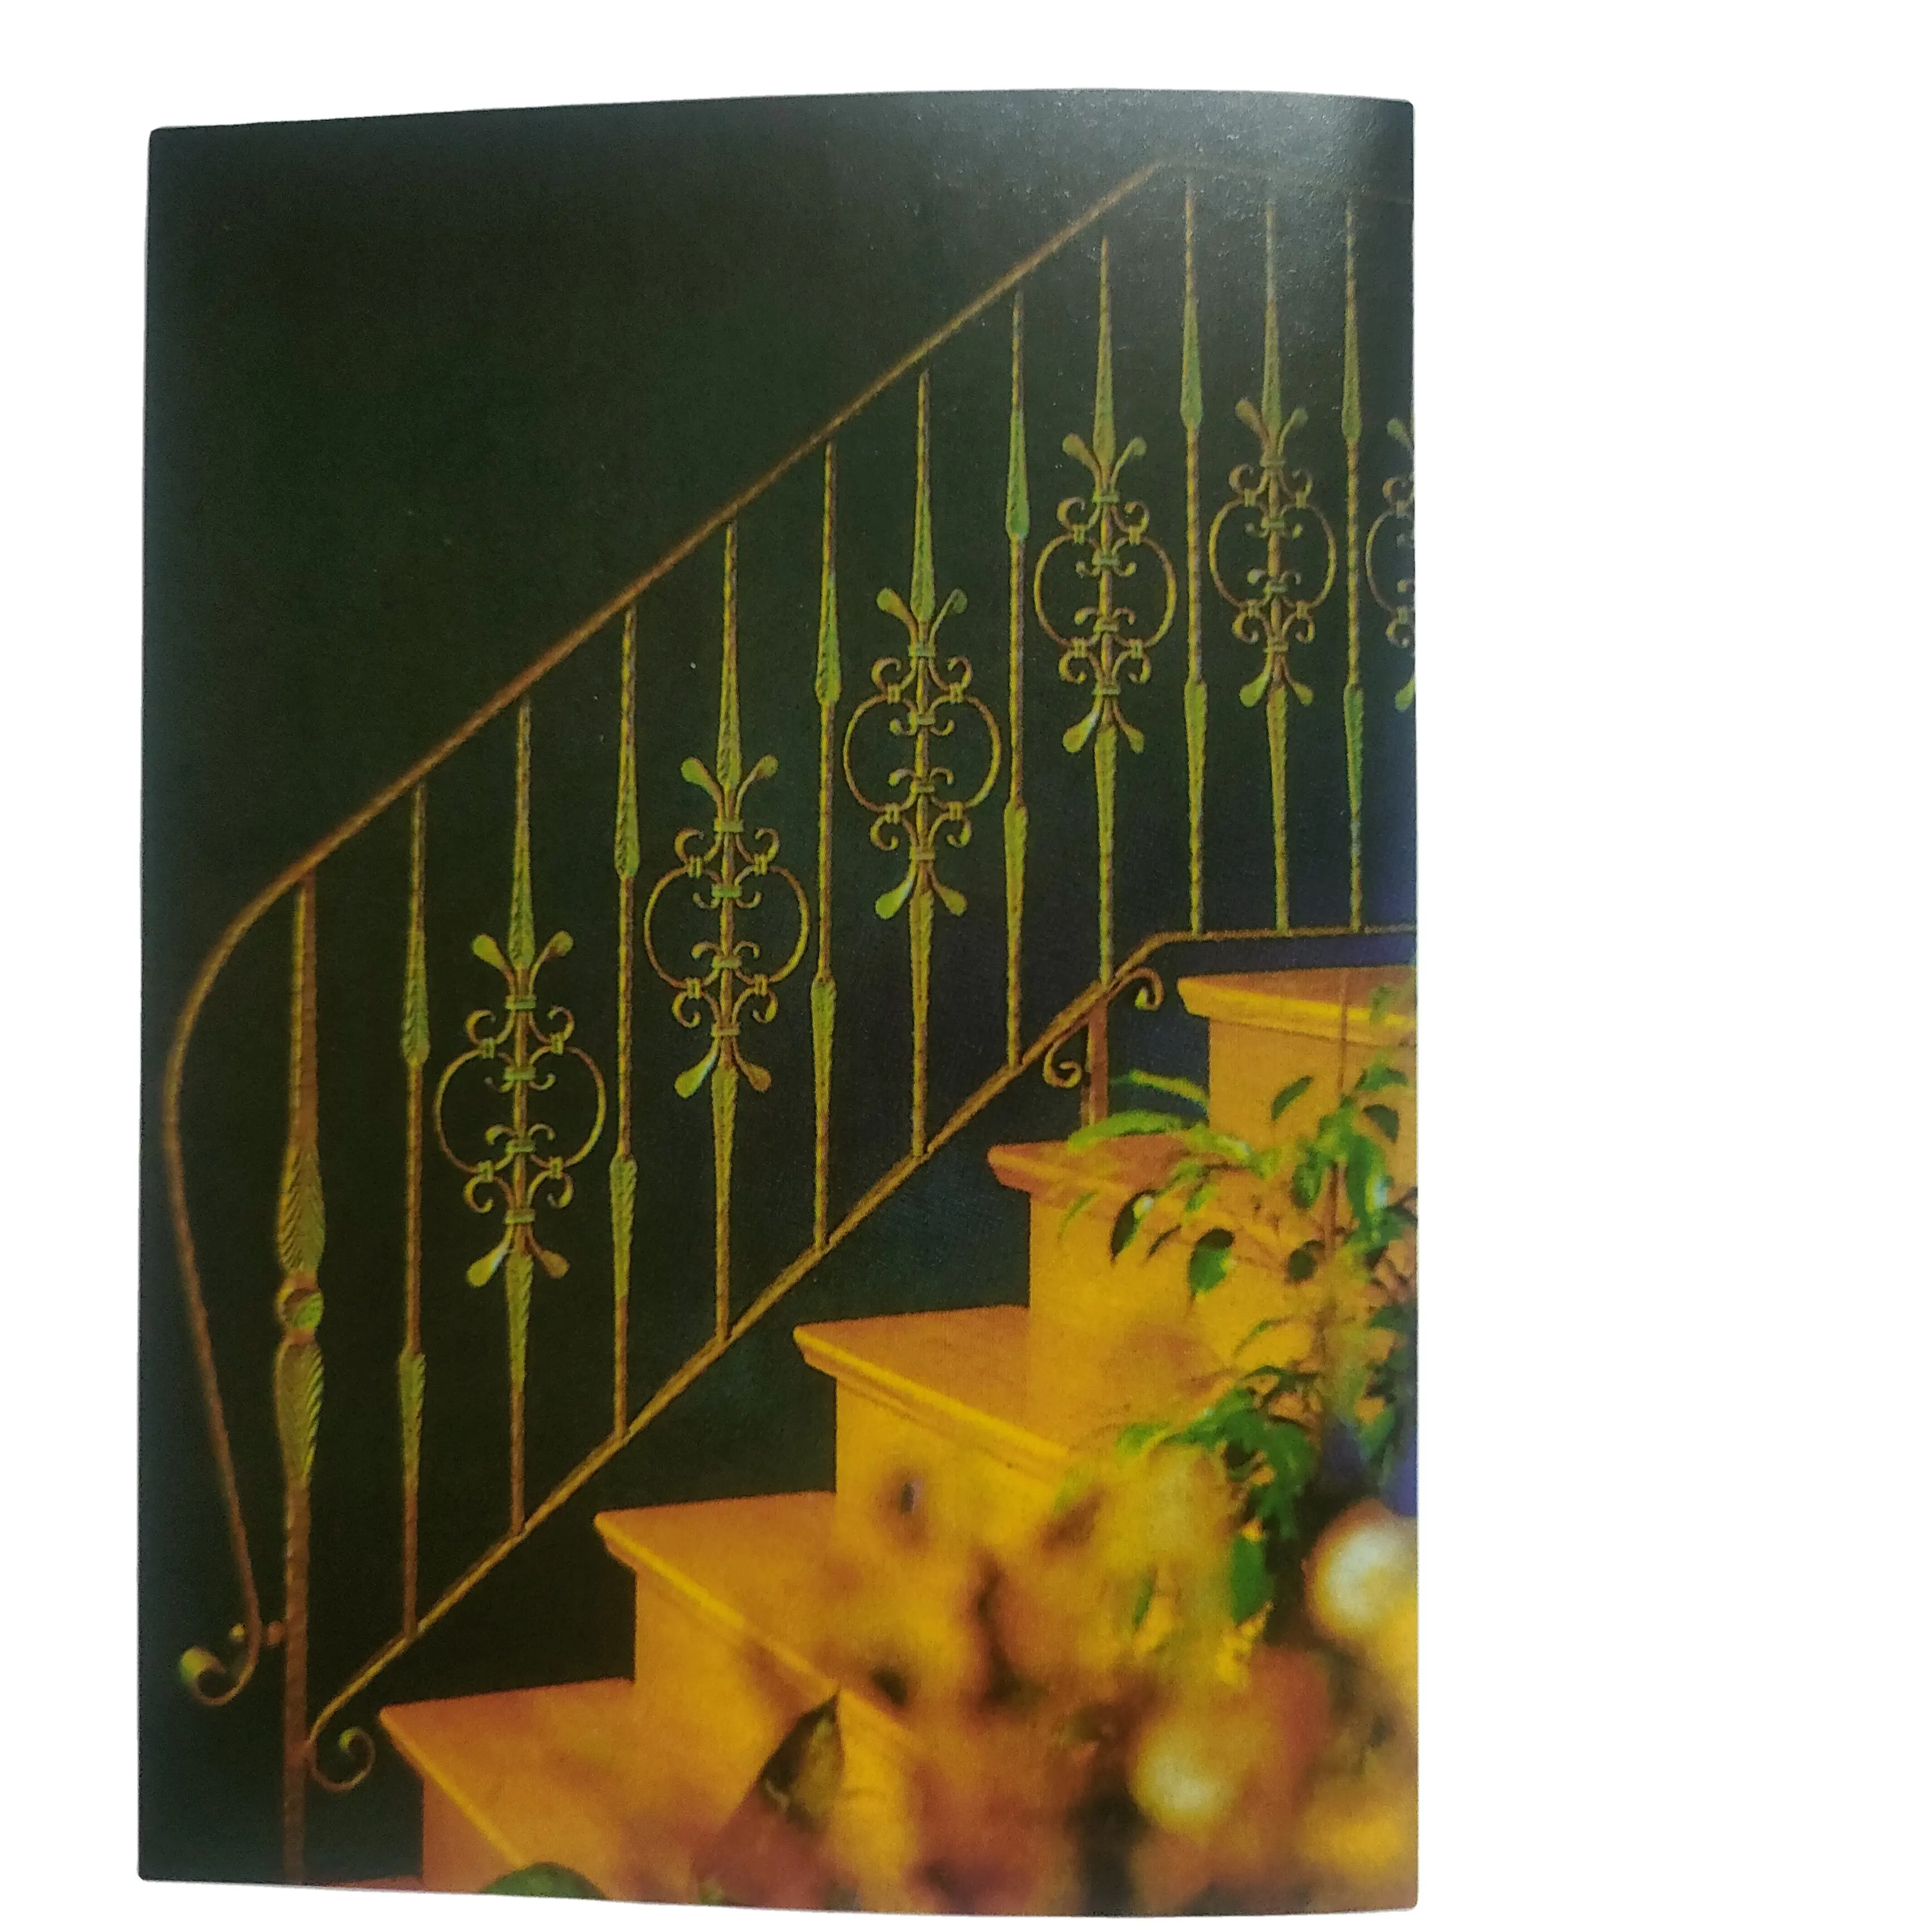 Escalera de aluminio curvo negro Balaustradas Pasamanos Barandillas Balcón Diseño para escaleras al aire libre